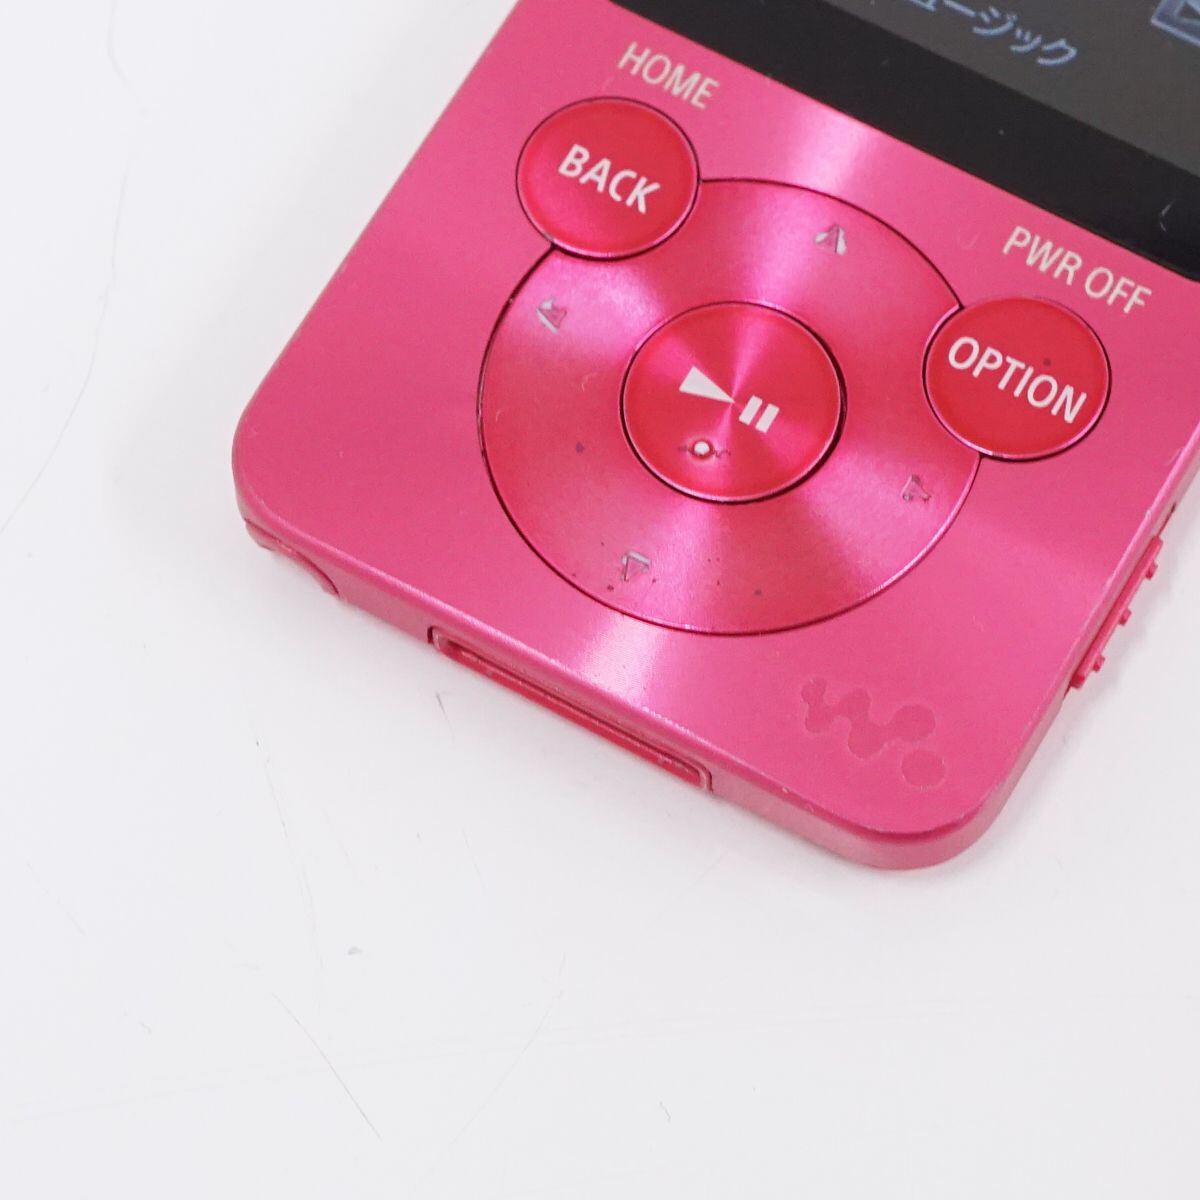 SONY WALKMAN NW-S13 4GB USED品 本体のみ ピンク ポータブル